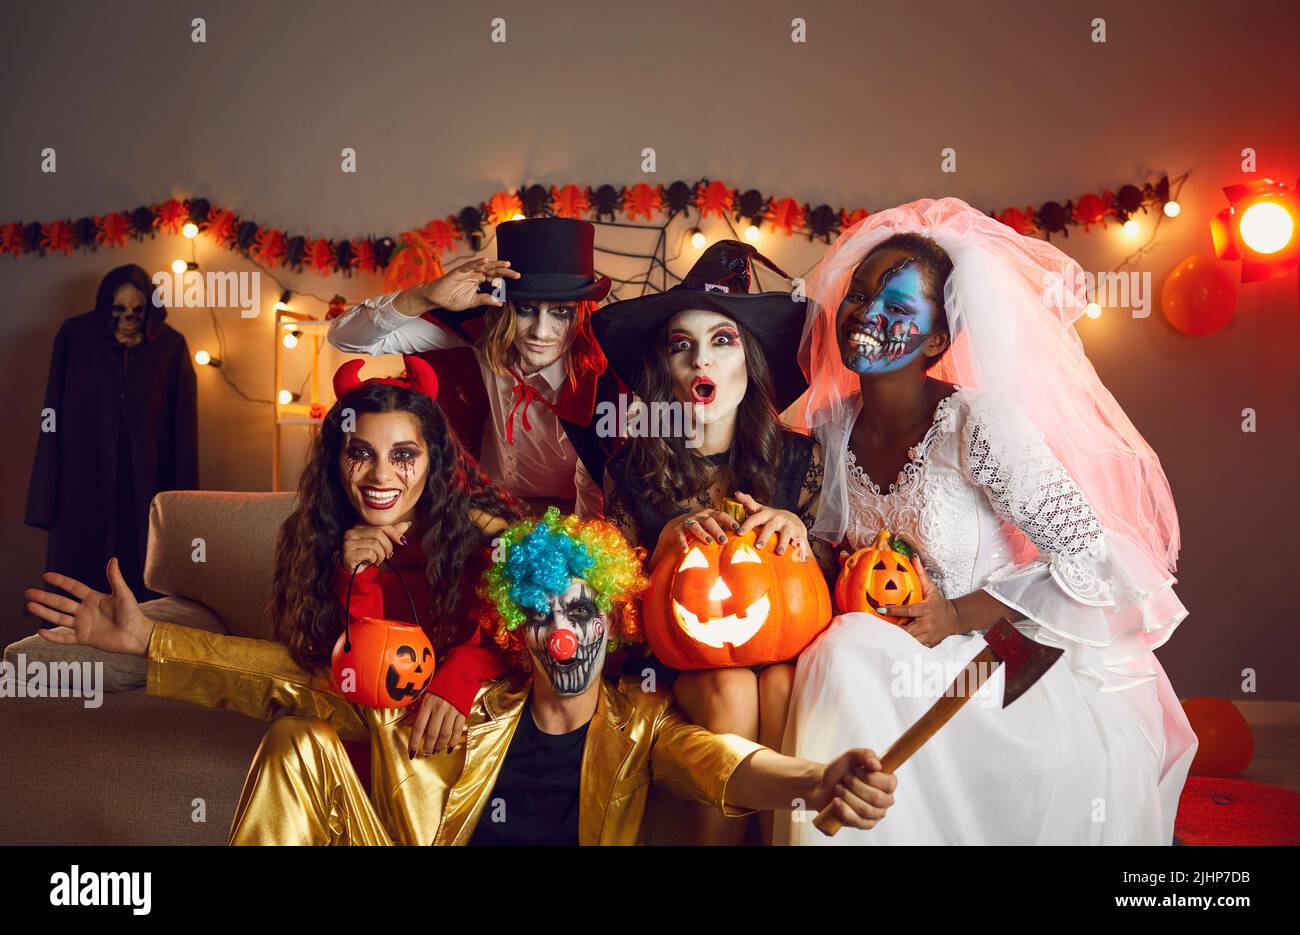 Gruppenfoto von glücklichen erwachsenen Freunden, die als gruselige Monster auf der Halloween-Party gekleidet sind Stockfoto